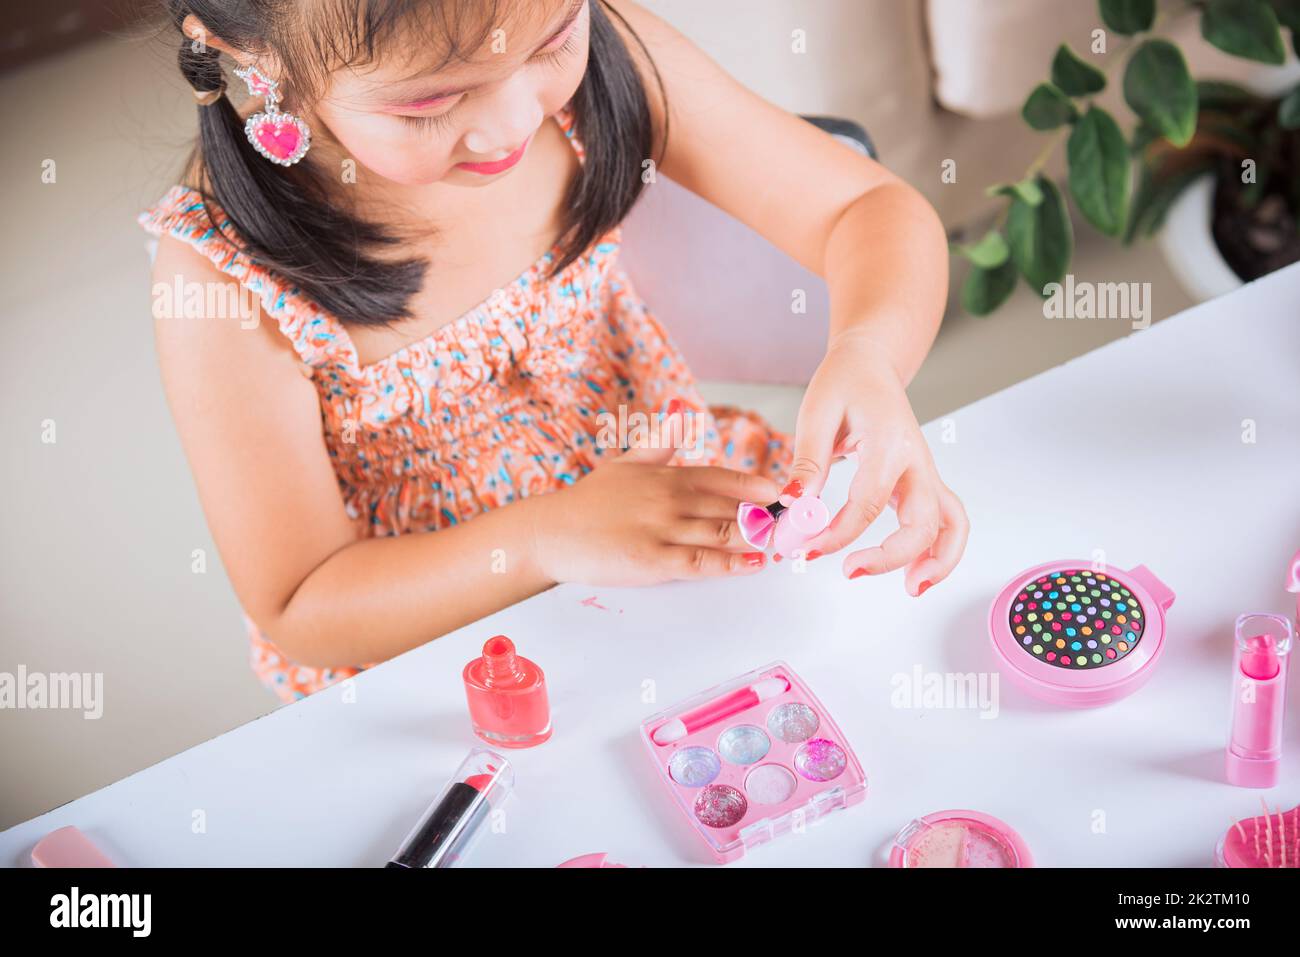 petite fille faisant le maquillage trempette brosse dans la bouteille pour peindre les ongles vernis à ongles rouge elle-même Banque D'Images